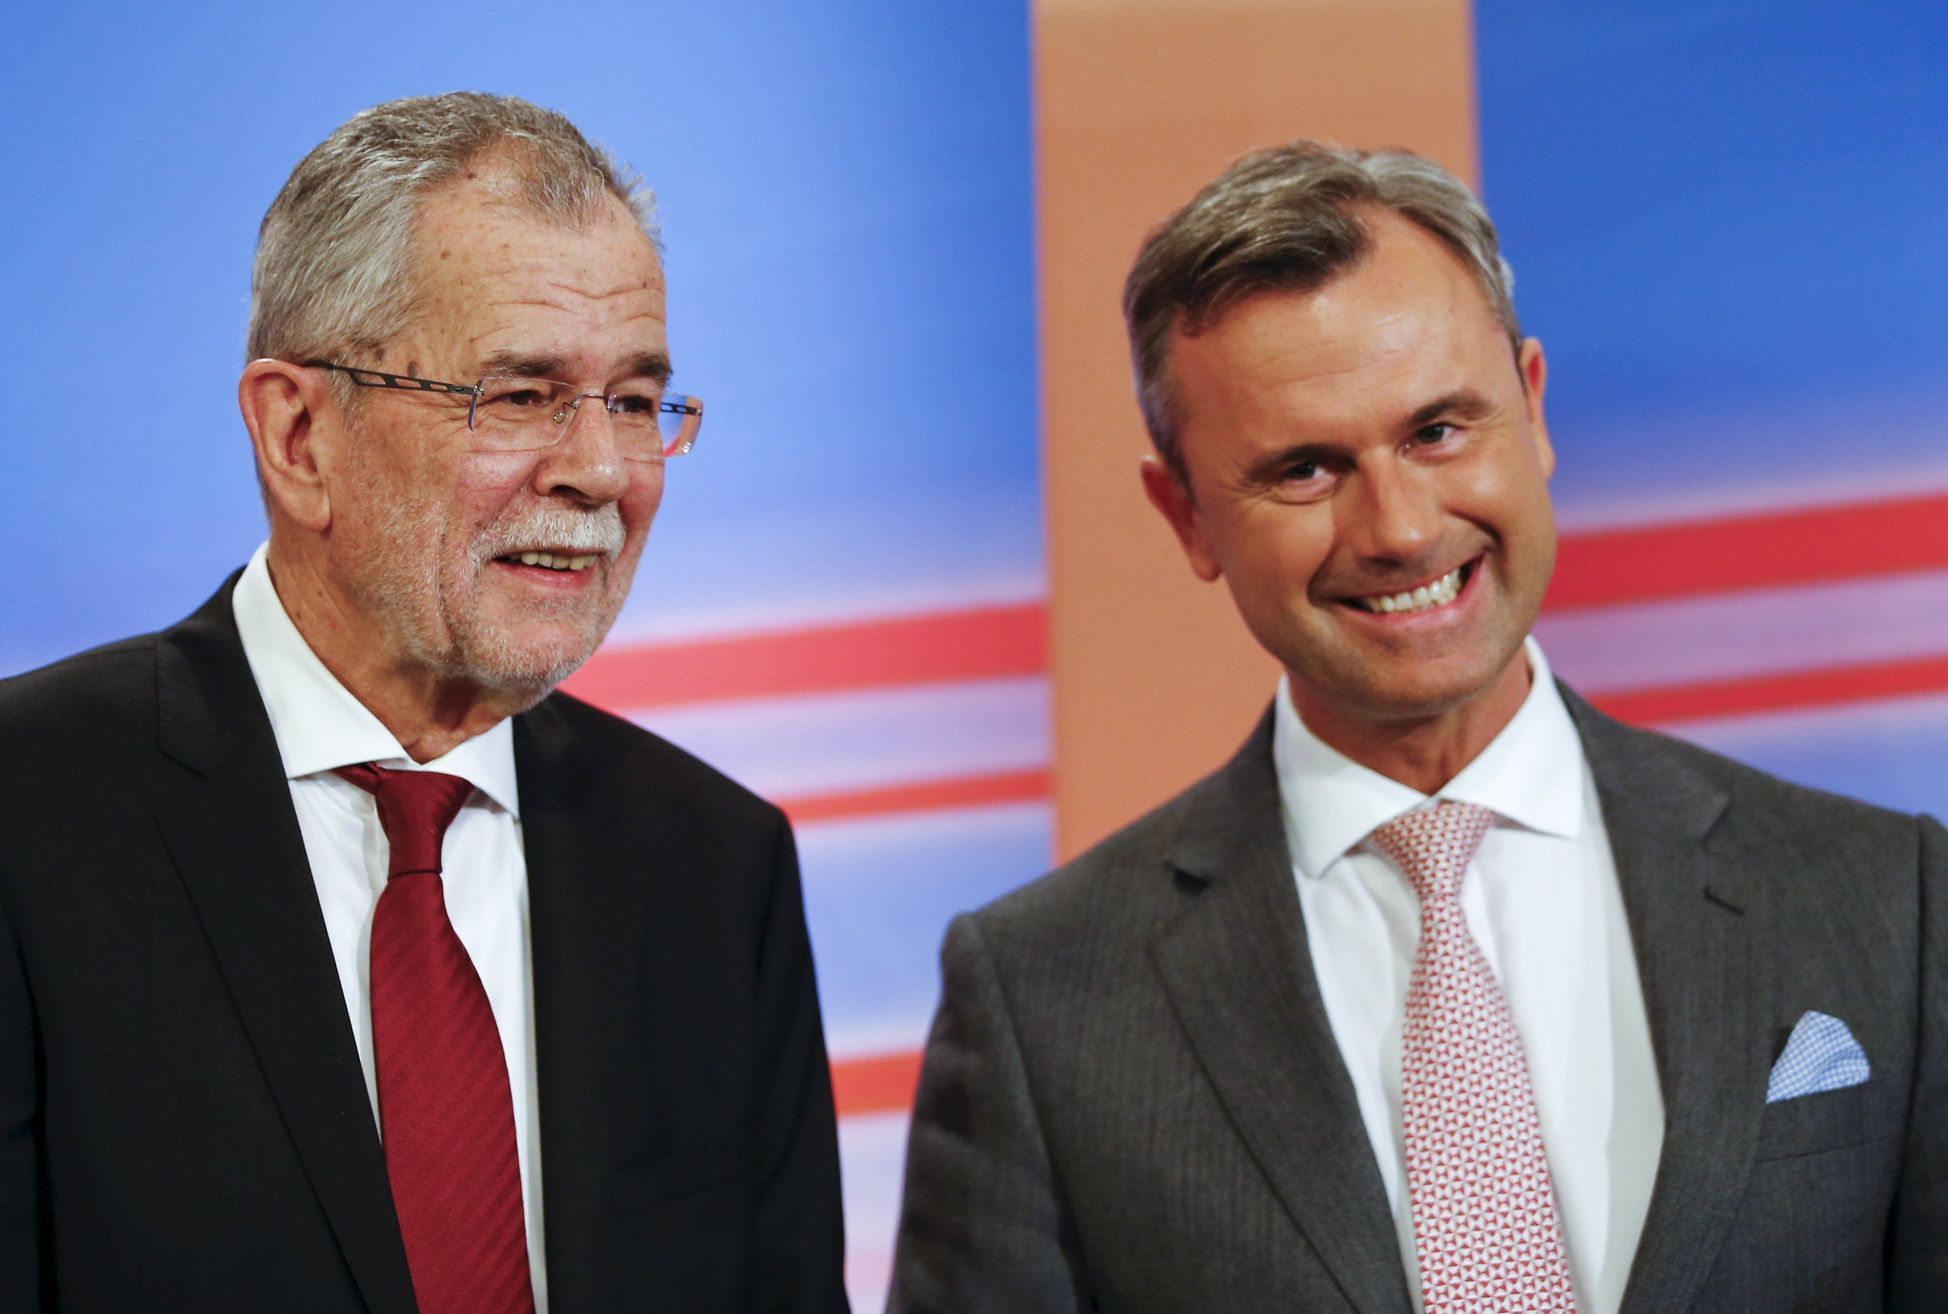 Rakousko volby Presidential candidates van der Bellen and Hofer react during a TV debate in Vienna